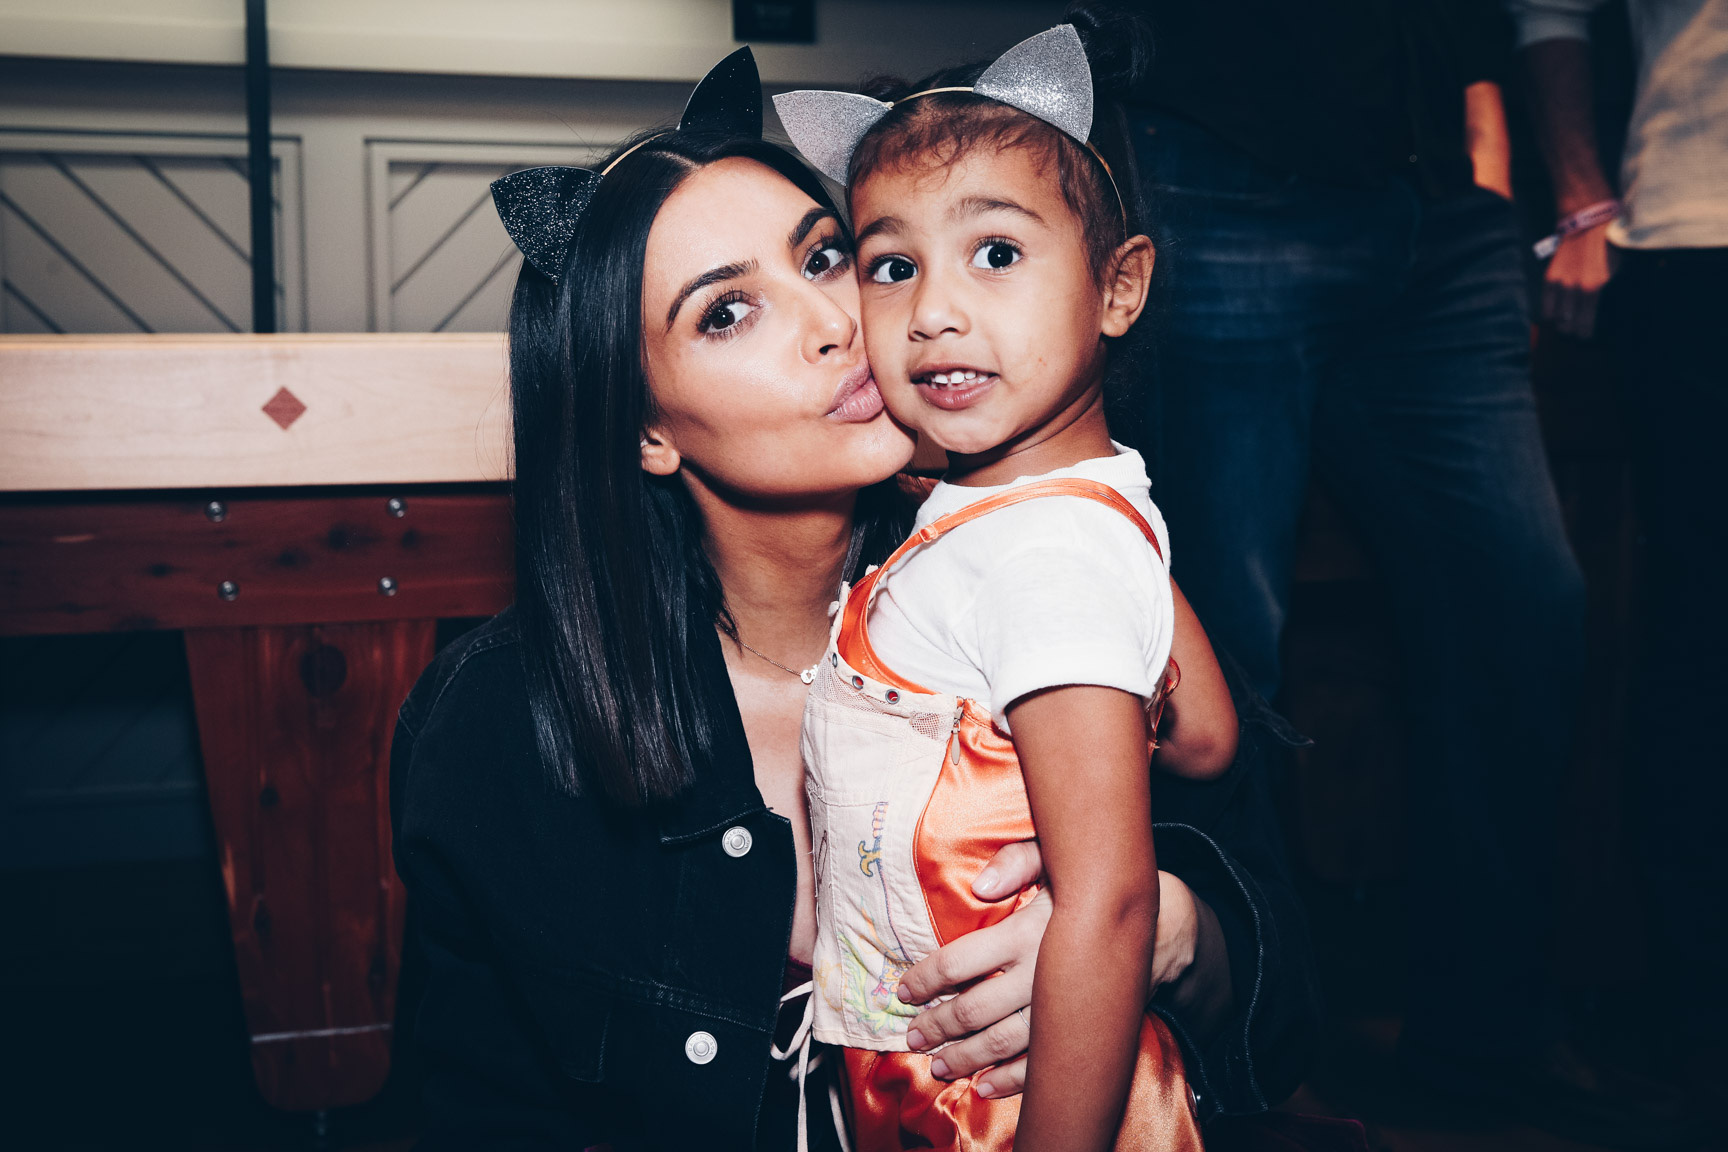 Kim Kardashian phẫn nộ vì Kanye West kể chuyện cô phá thai trong bài phát biểu tranh cử Tổng thống, cả gia tộc sốc nặng  - Ảnh 3.